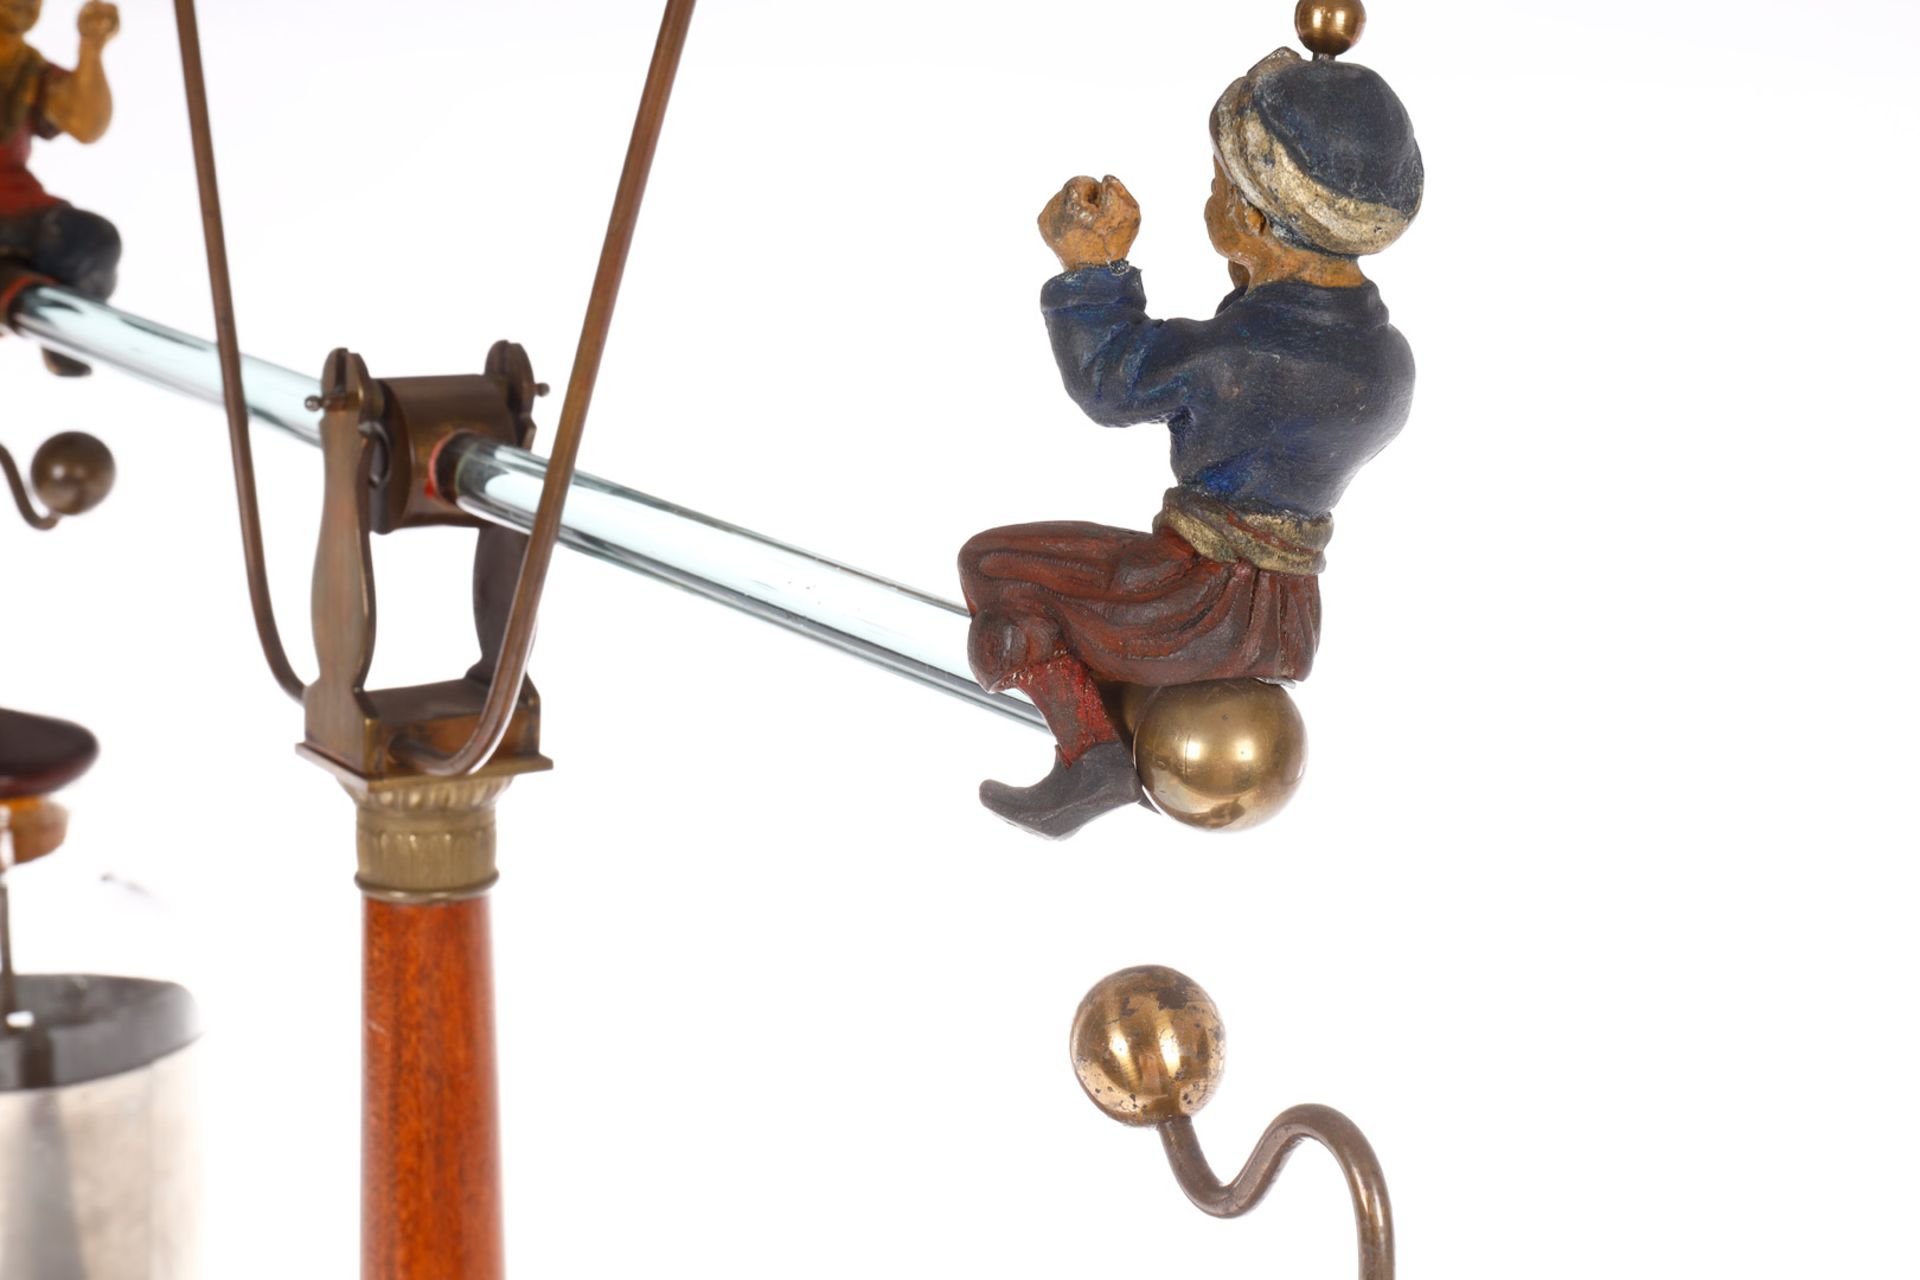 Historische elektrostatische Wippe, bedeutendes frühes technisches Spielzeug um 1810, Holzsockel, - Bild 7 aus 9